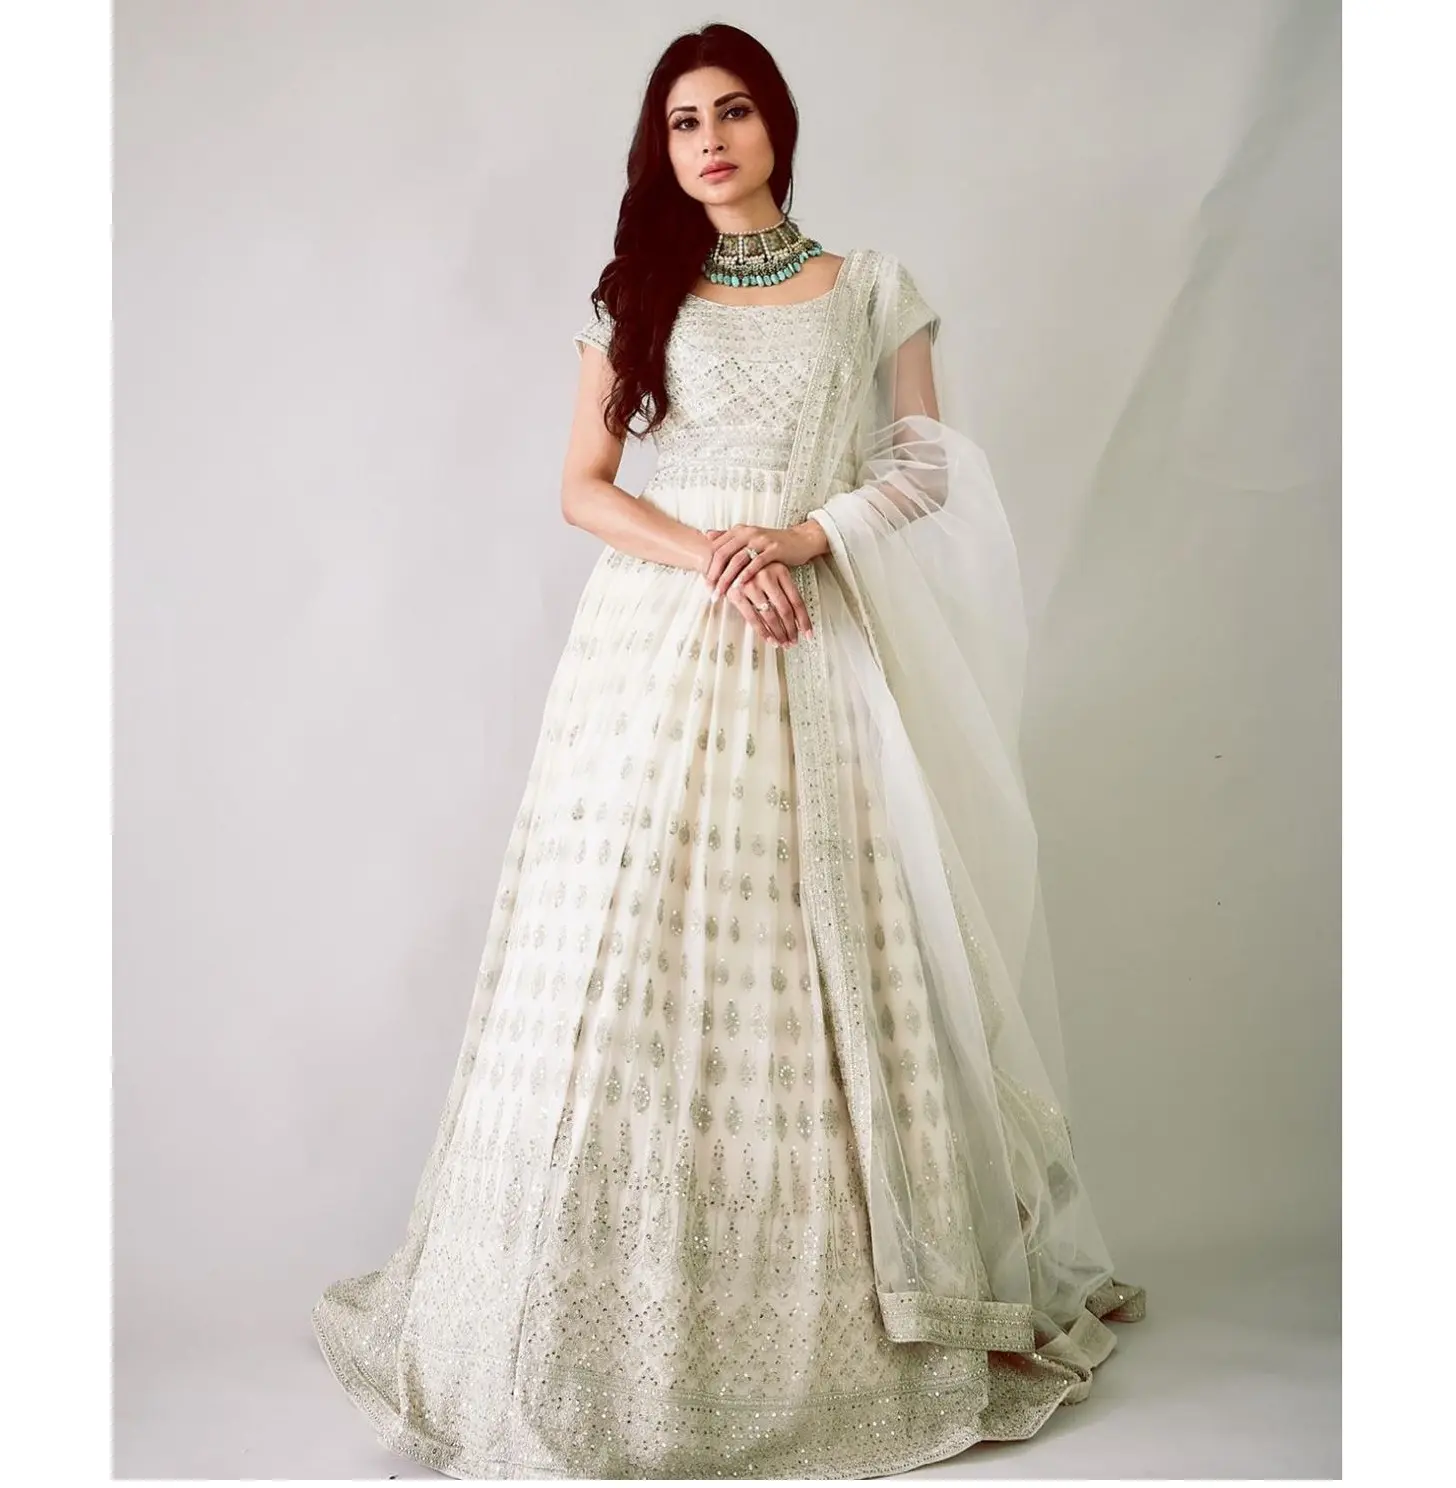 Стиль Anarkali, индийская и Пакистанская одежда с вышивкой, женская одежда, костюм сальвар камиз, вечерняя одежда, индийская Свадебная женская одежда, оптовая продажа